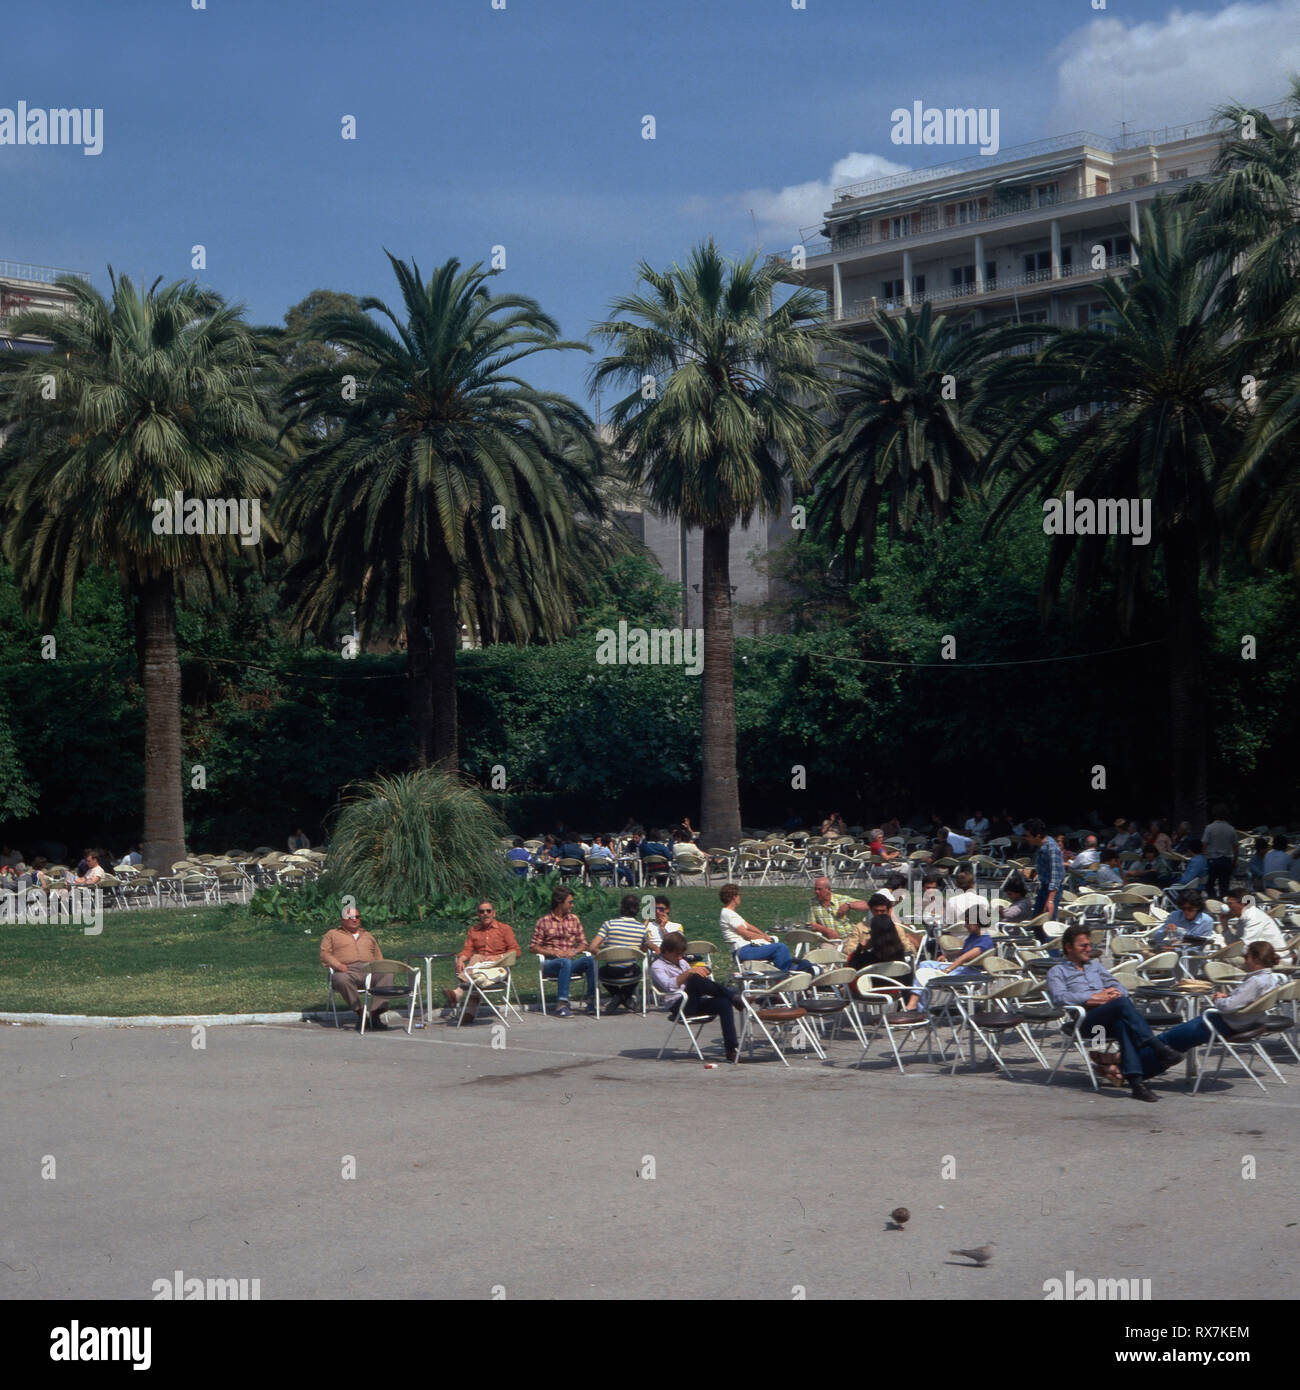 Athen, Peloponnes - Sitzende Menschenmenge, Griechenland 1980er. Seduto folla, Grecia degli anni ottanta Foto Stock